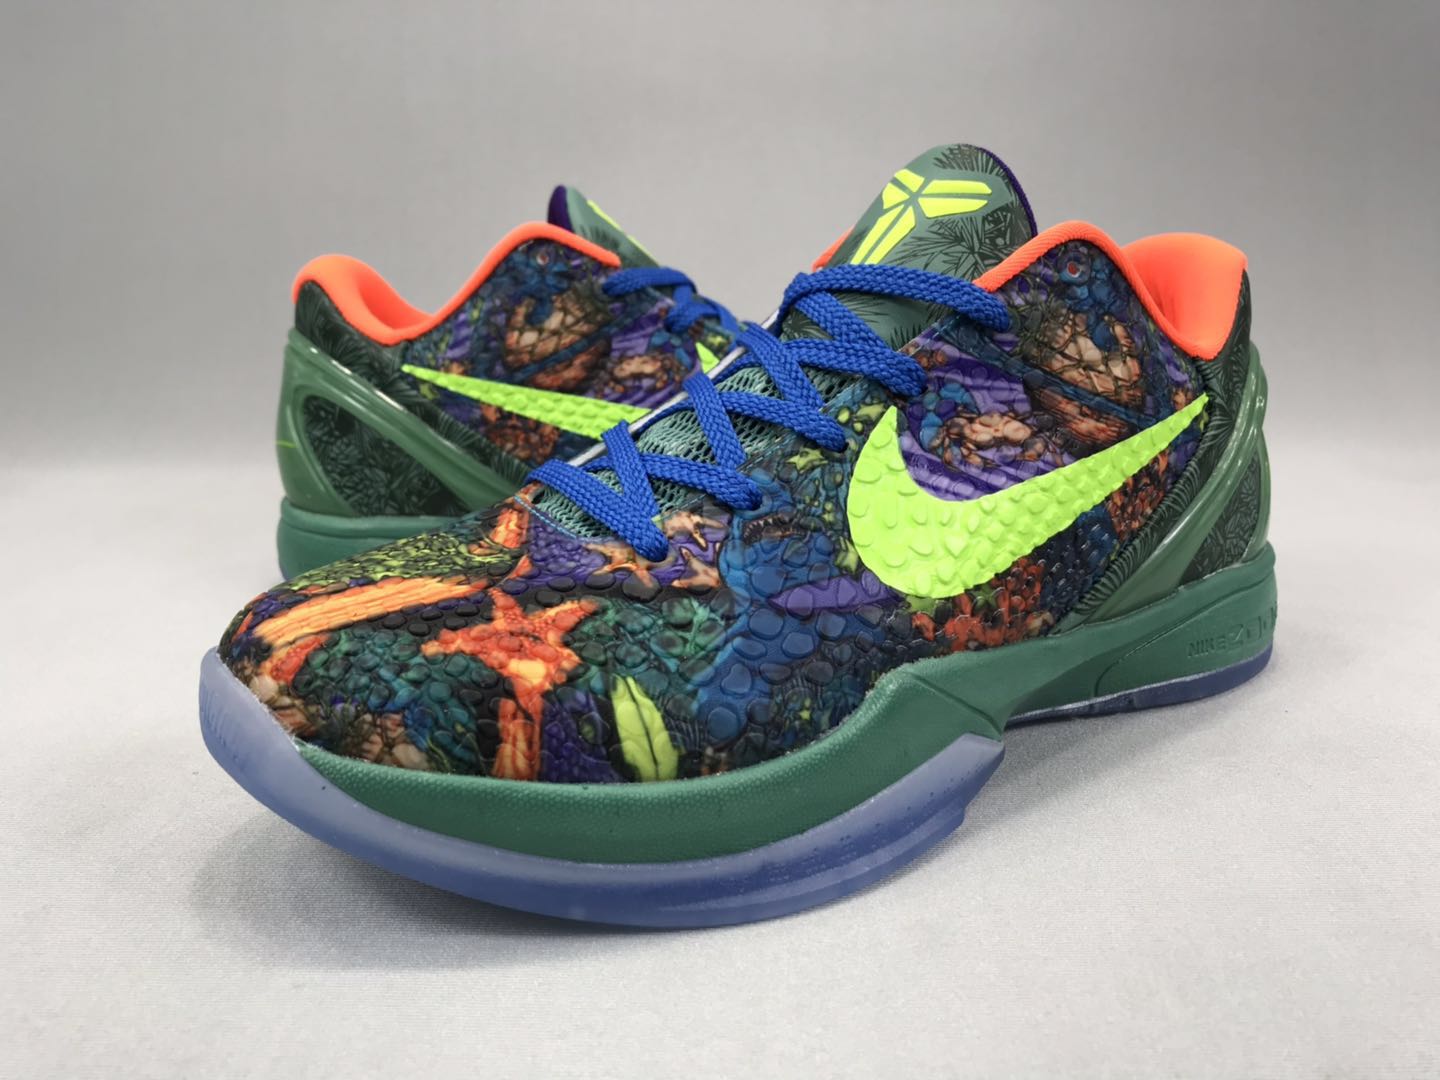 New Nike Kobe Bryant VIII Colorful Shoes